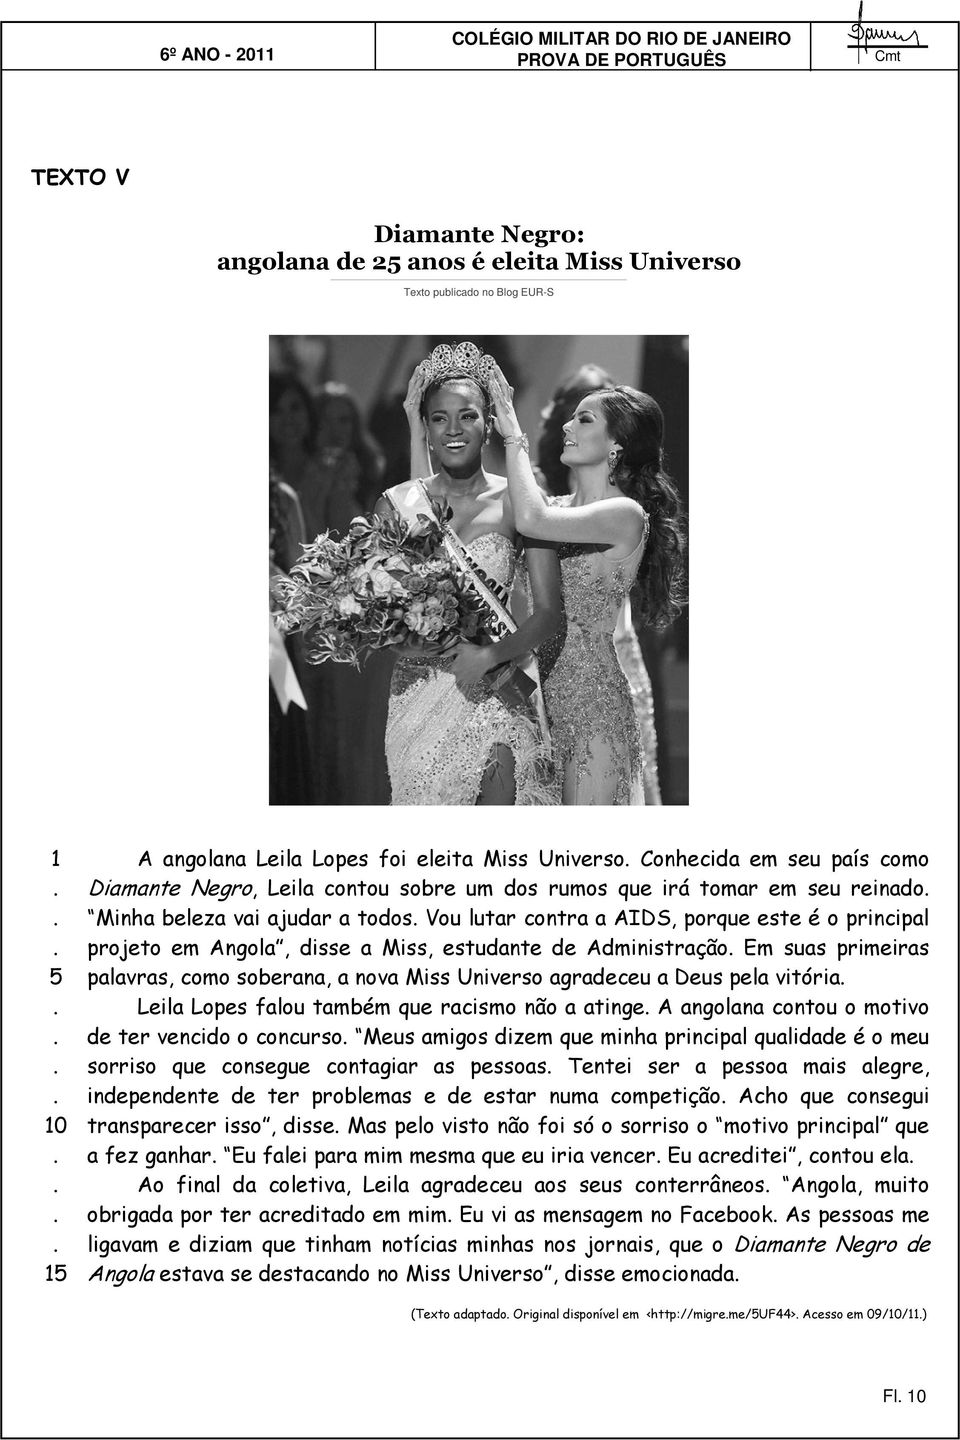 Administração Em suas primeiras palavras, como soberana, a nova Miss Universo agradeceu a Deus pela vitória Leila Lopes falou também que racismo não a atinge A angolana contou o motivo de ter vencido